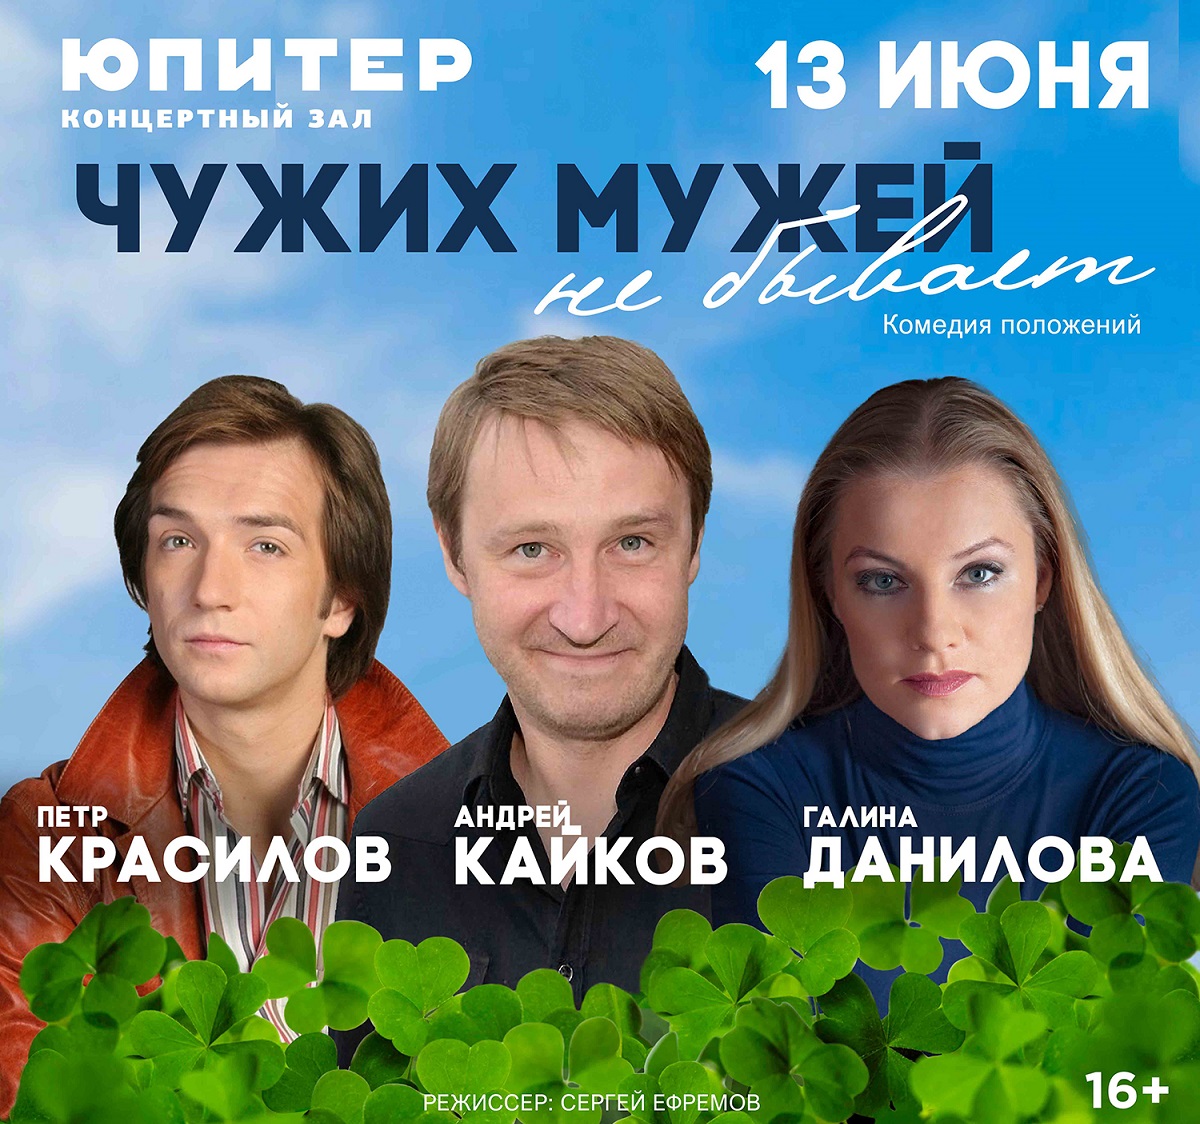 Спектакль «Чужих мужей не бывает» состоится в Нижнем Новгороде 13 июня